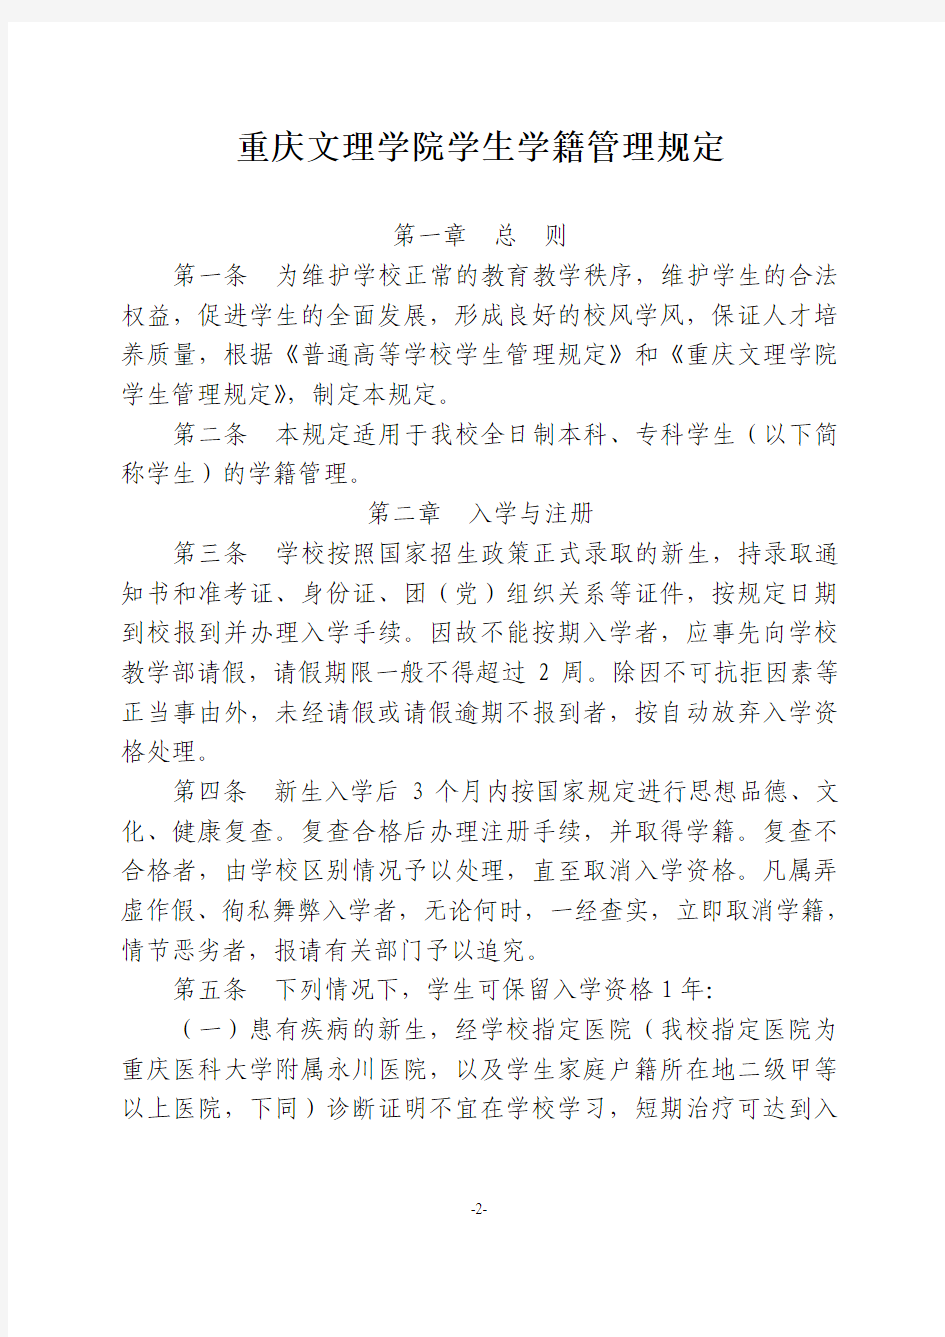 关于印发《重庆文理学院学生学籍管理规定》等3个文件的通知